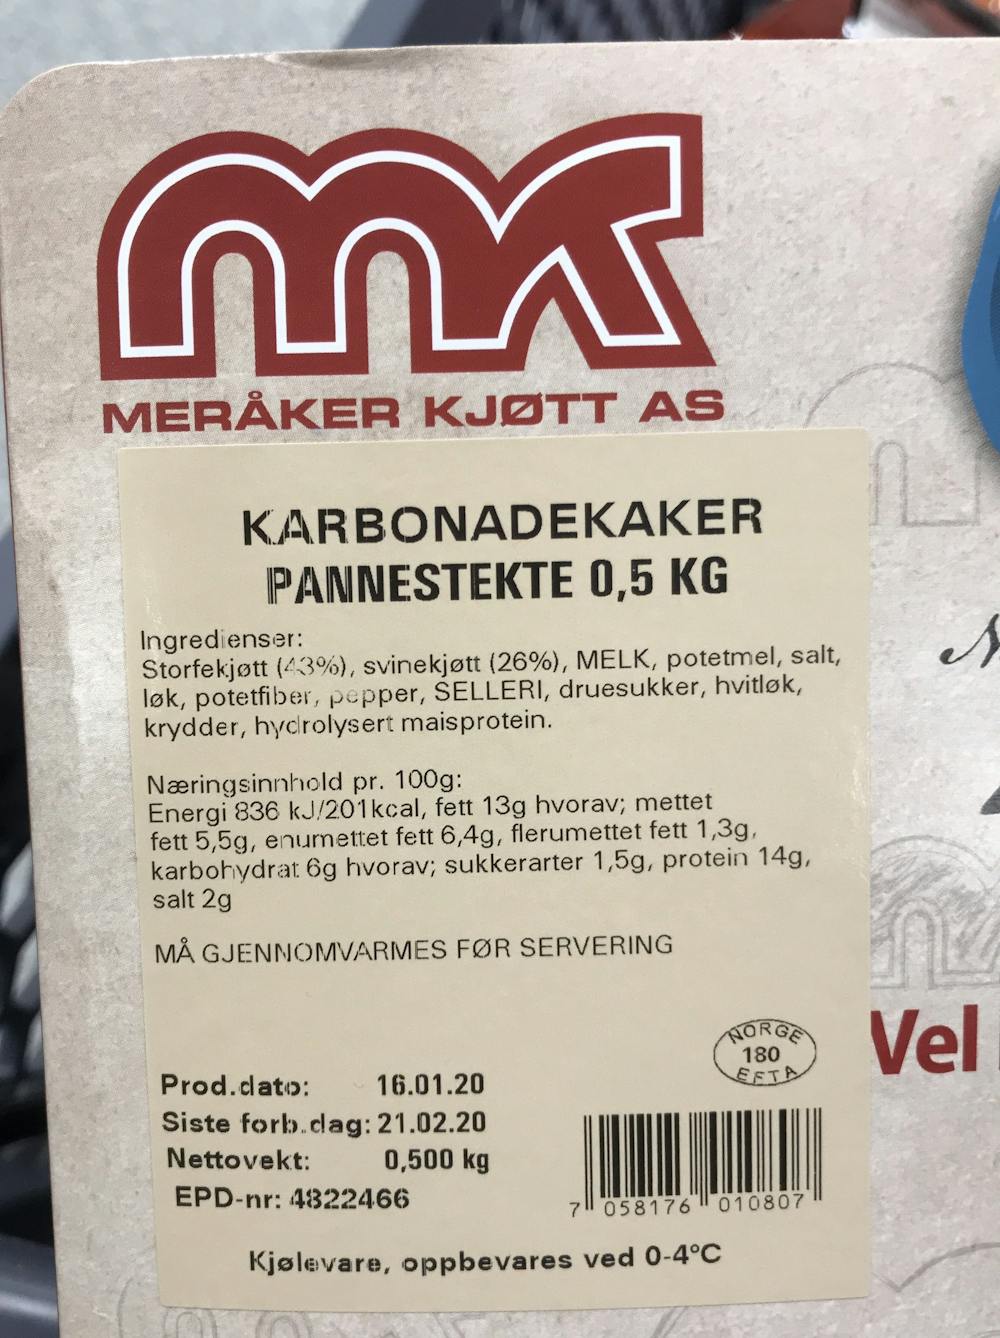 Ingredienslisten til Karbonadekaker, pannestekste, Meråker kjøtt AS 